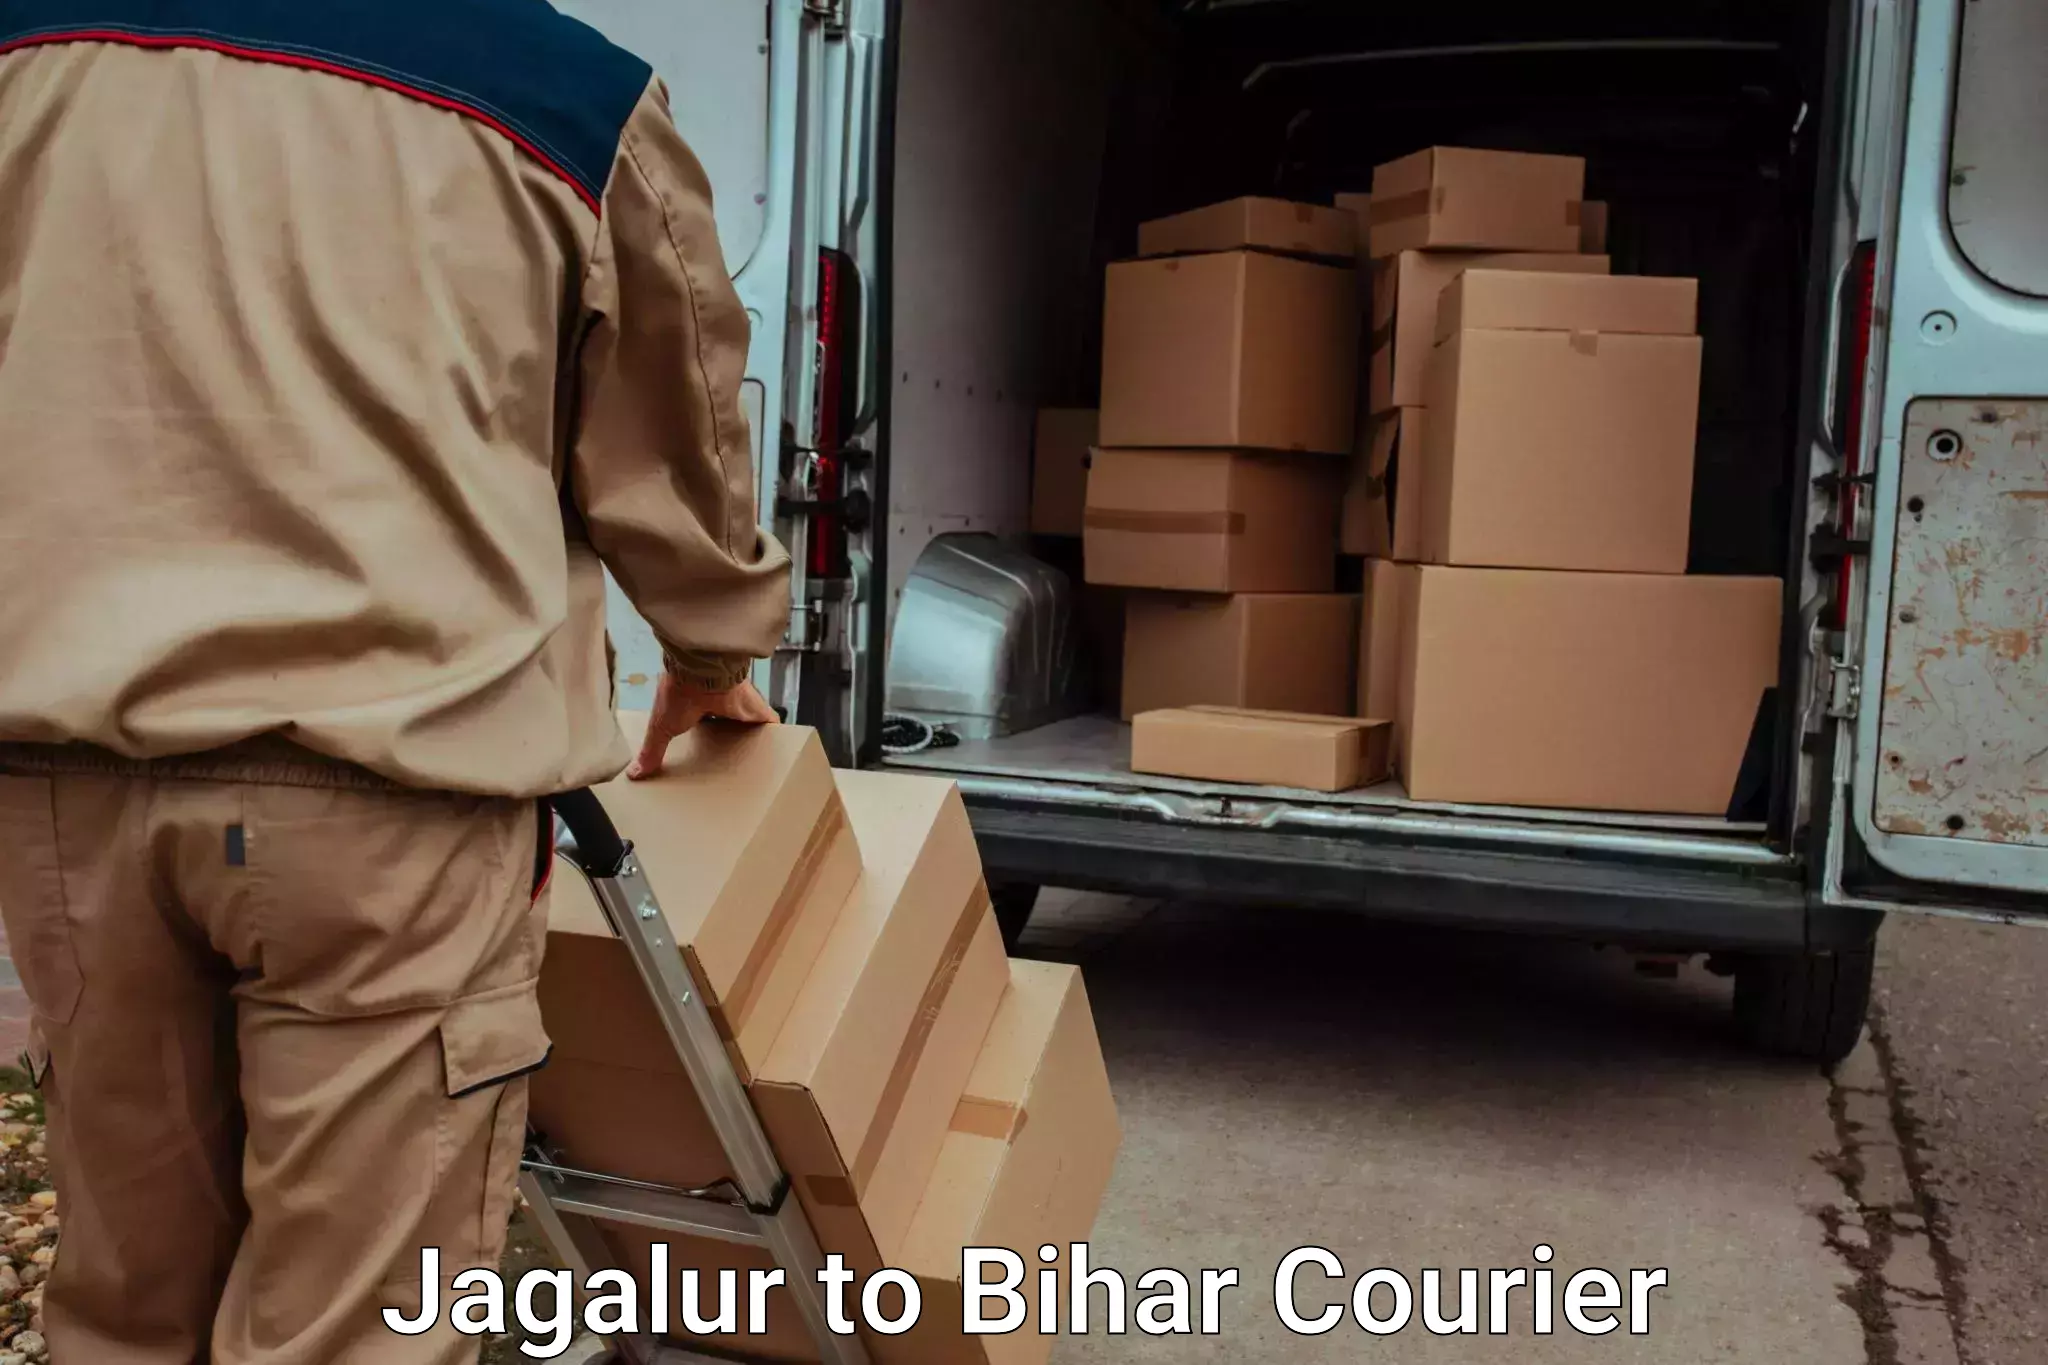 Baggage transport network Jagalur to Dighwara